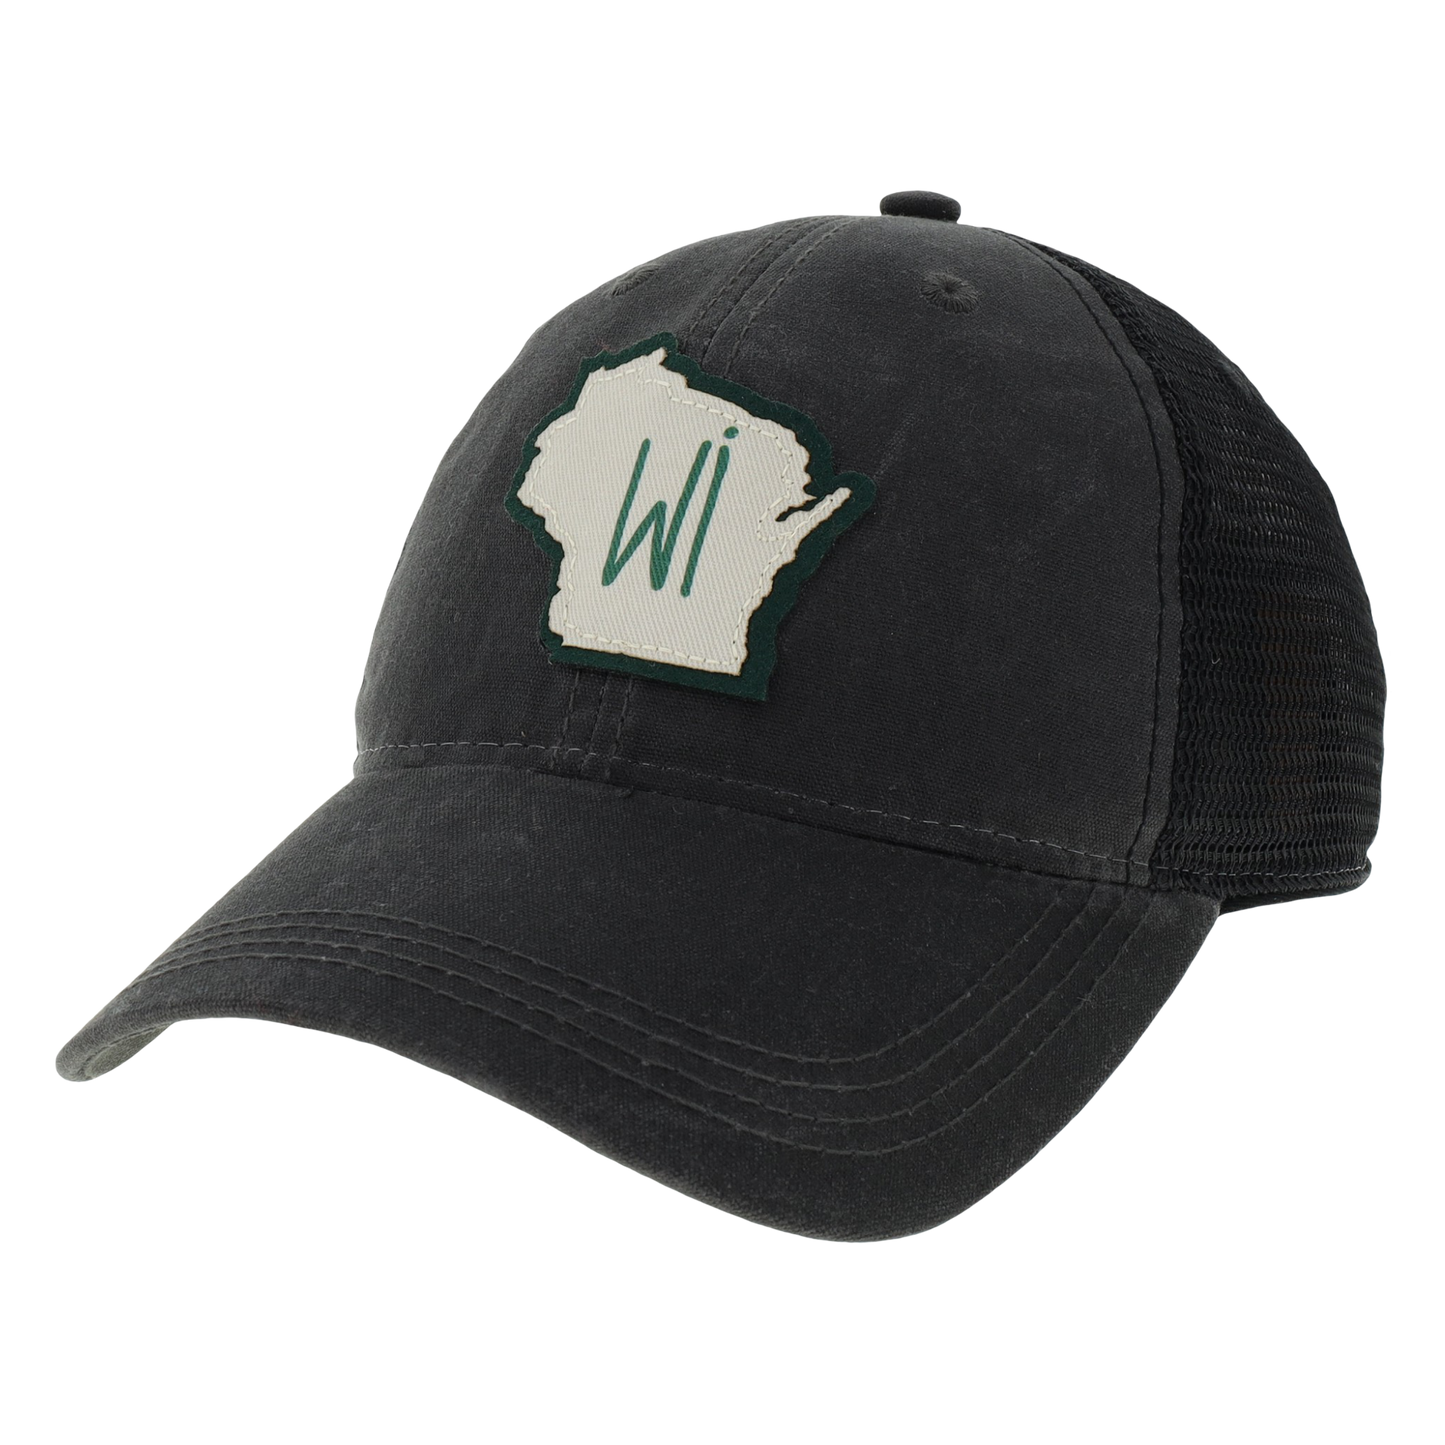 Wisconsin Waxed Trucker Hat in Charcoal/Black